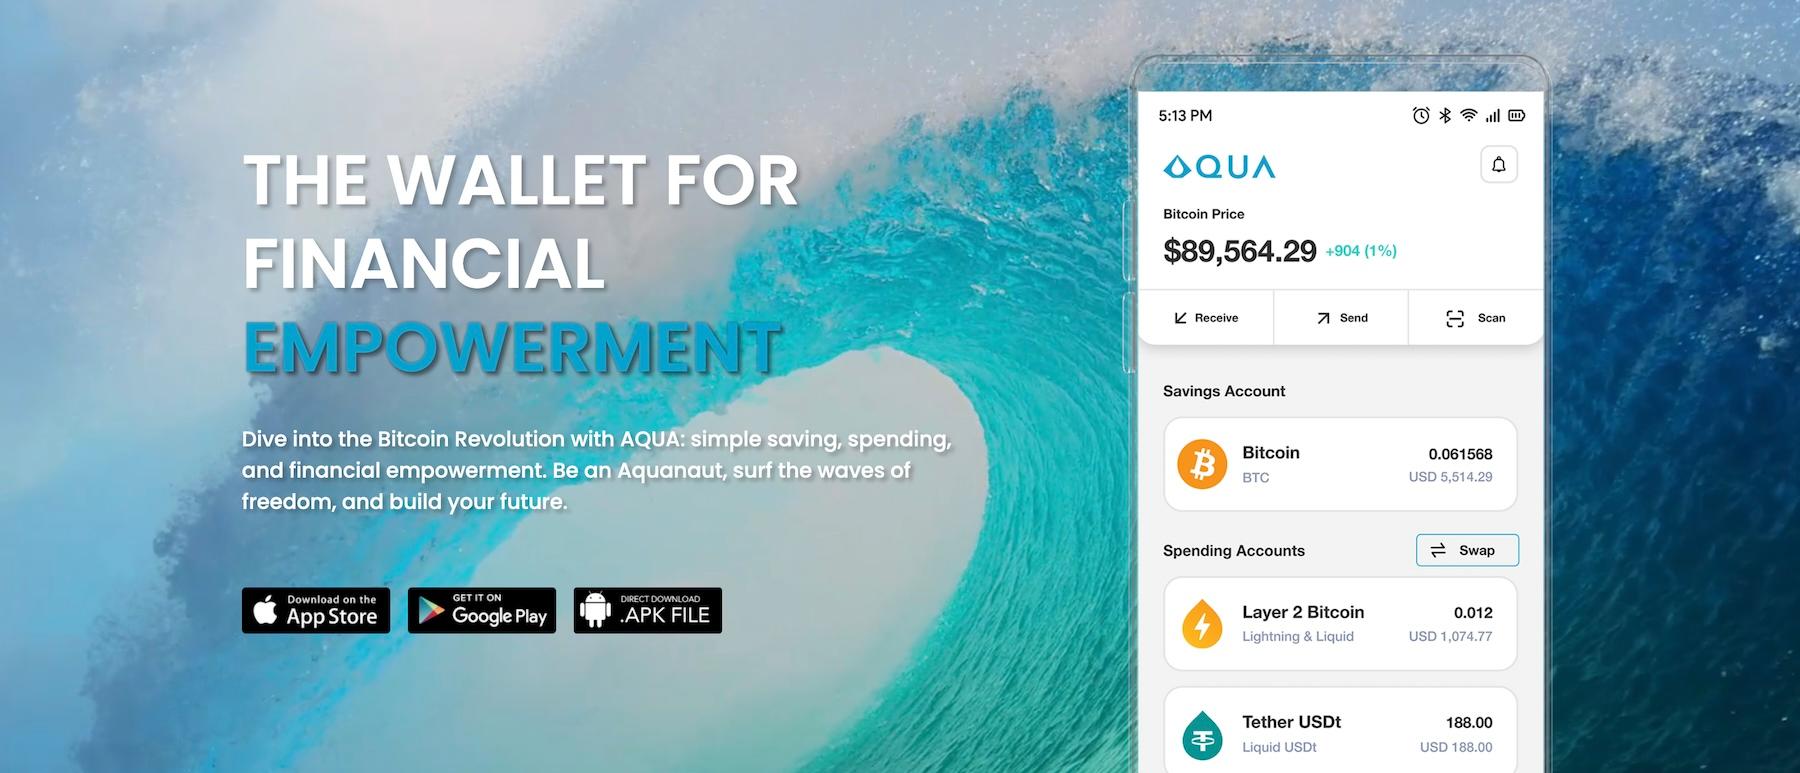 AQUA Bitcoin Wallet Review image